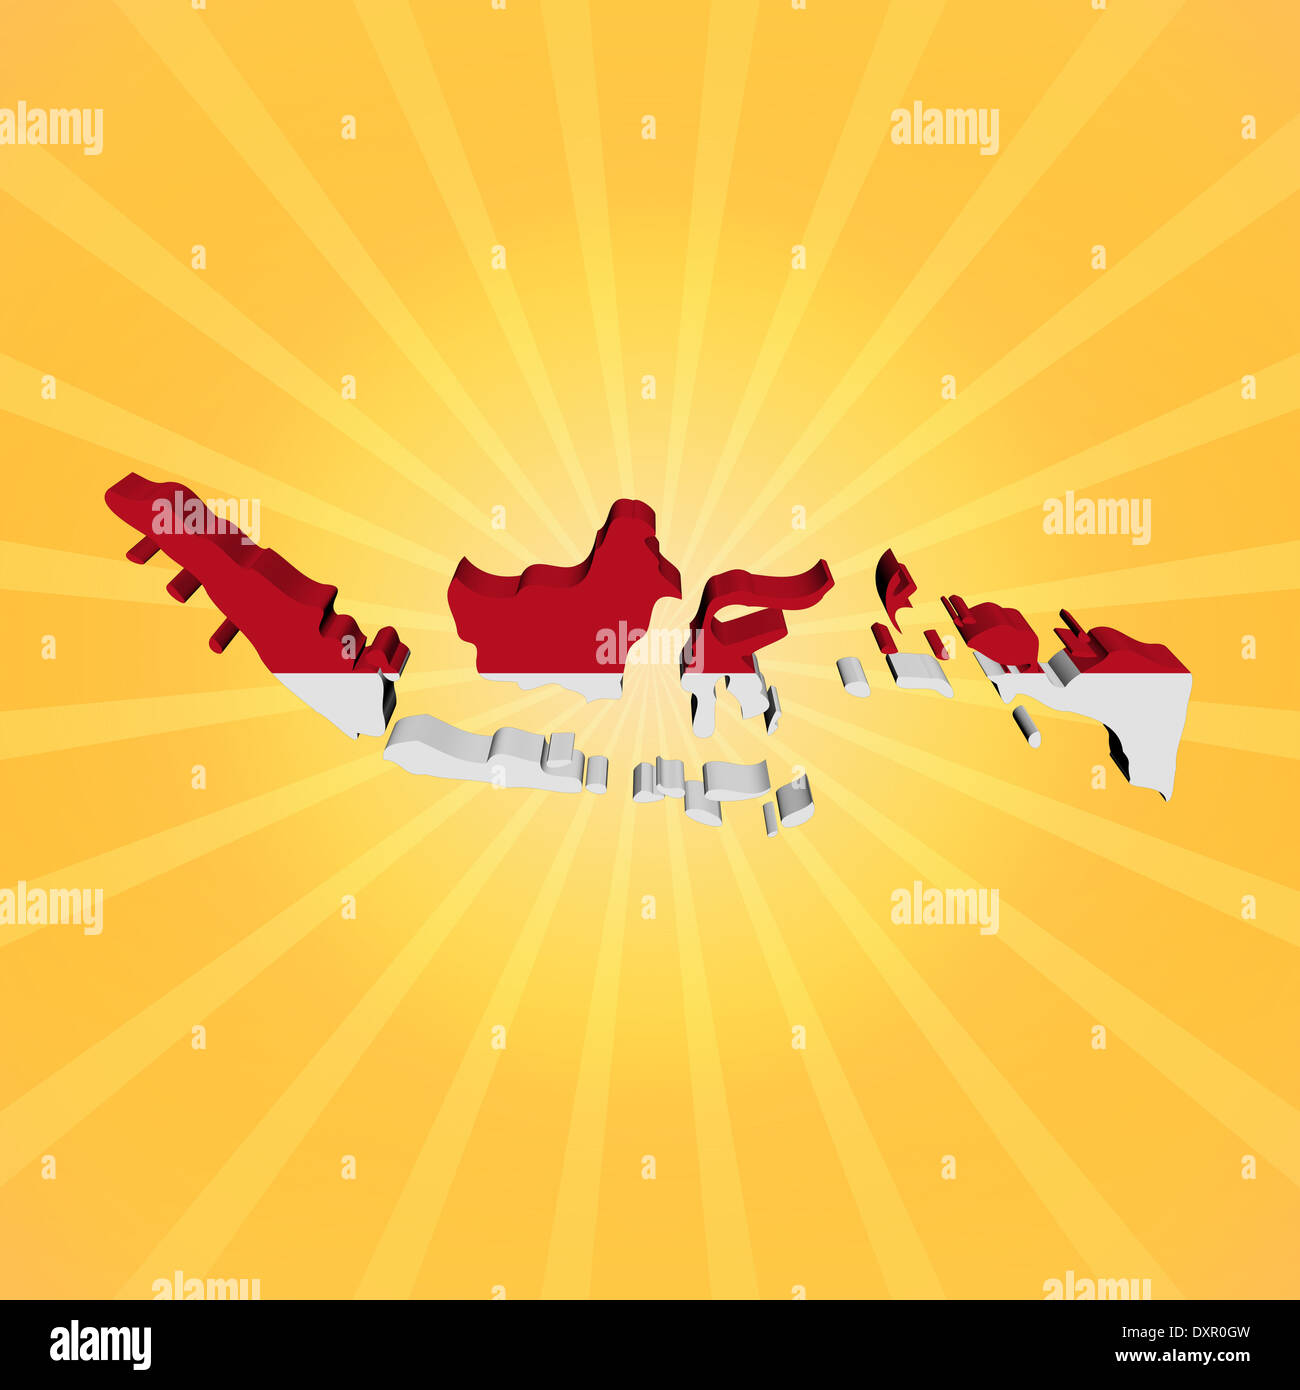 Indonesia map flag on sunburst illustration Stock Photo